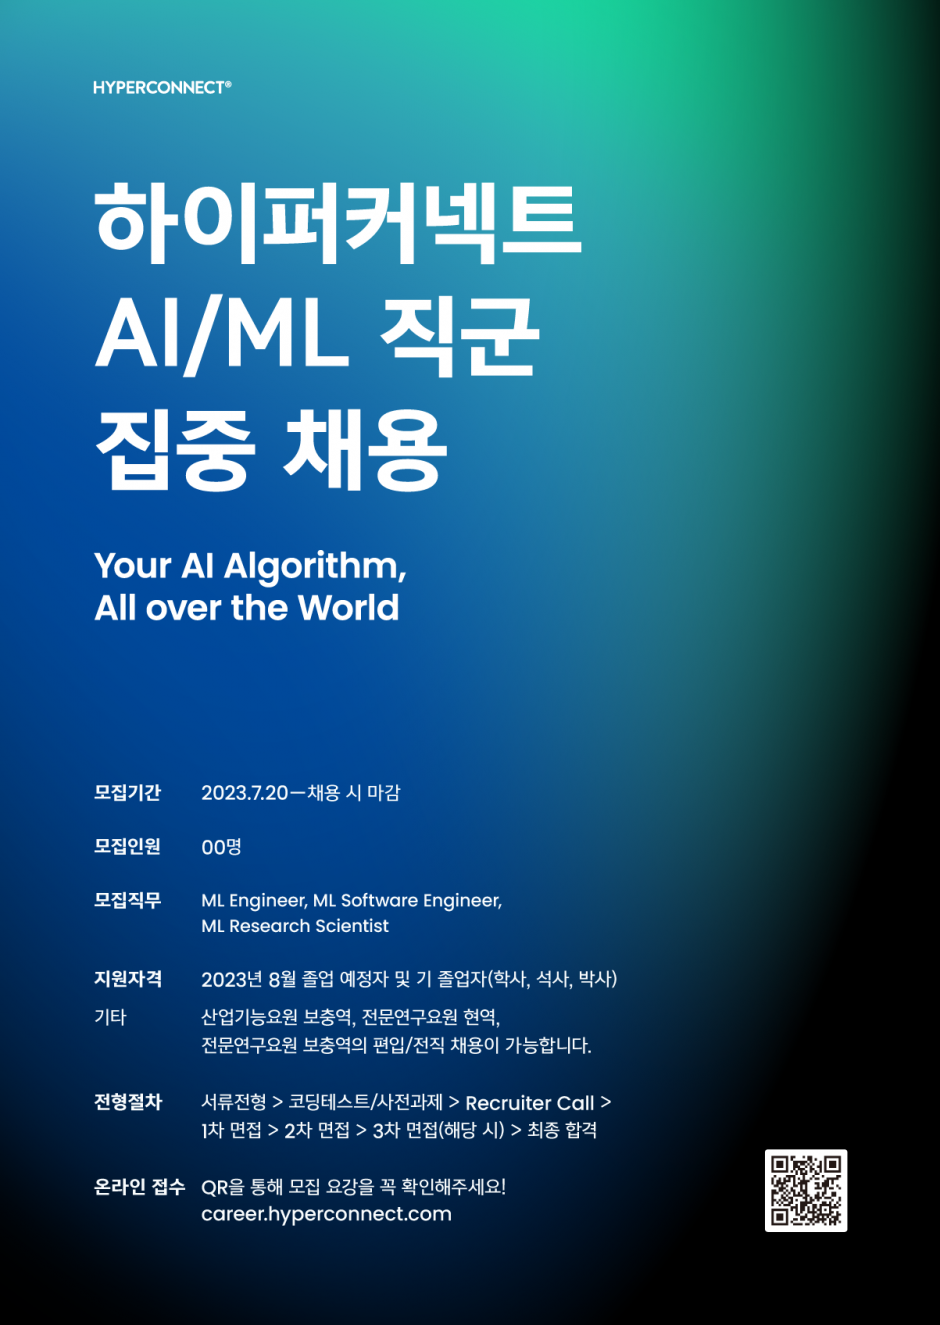 [하이퍼커넥트] AI ML 직군 집중채용 포스터